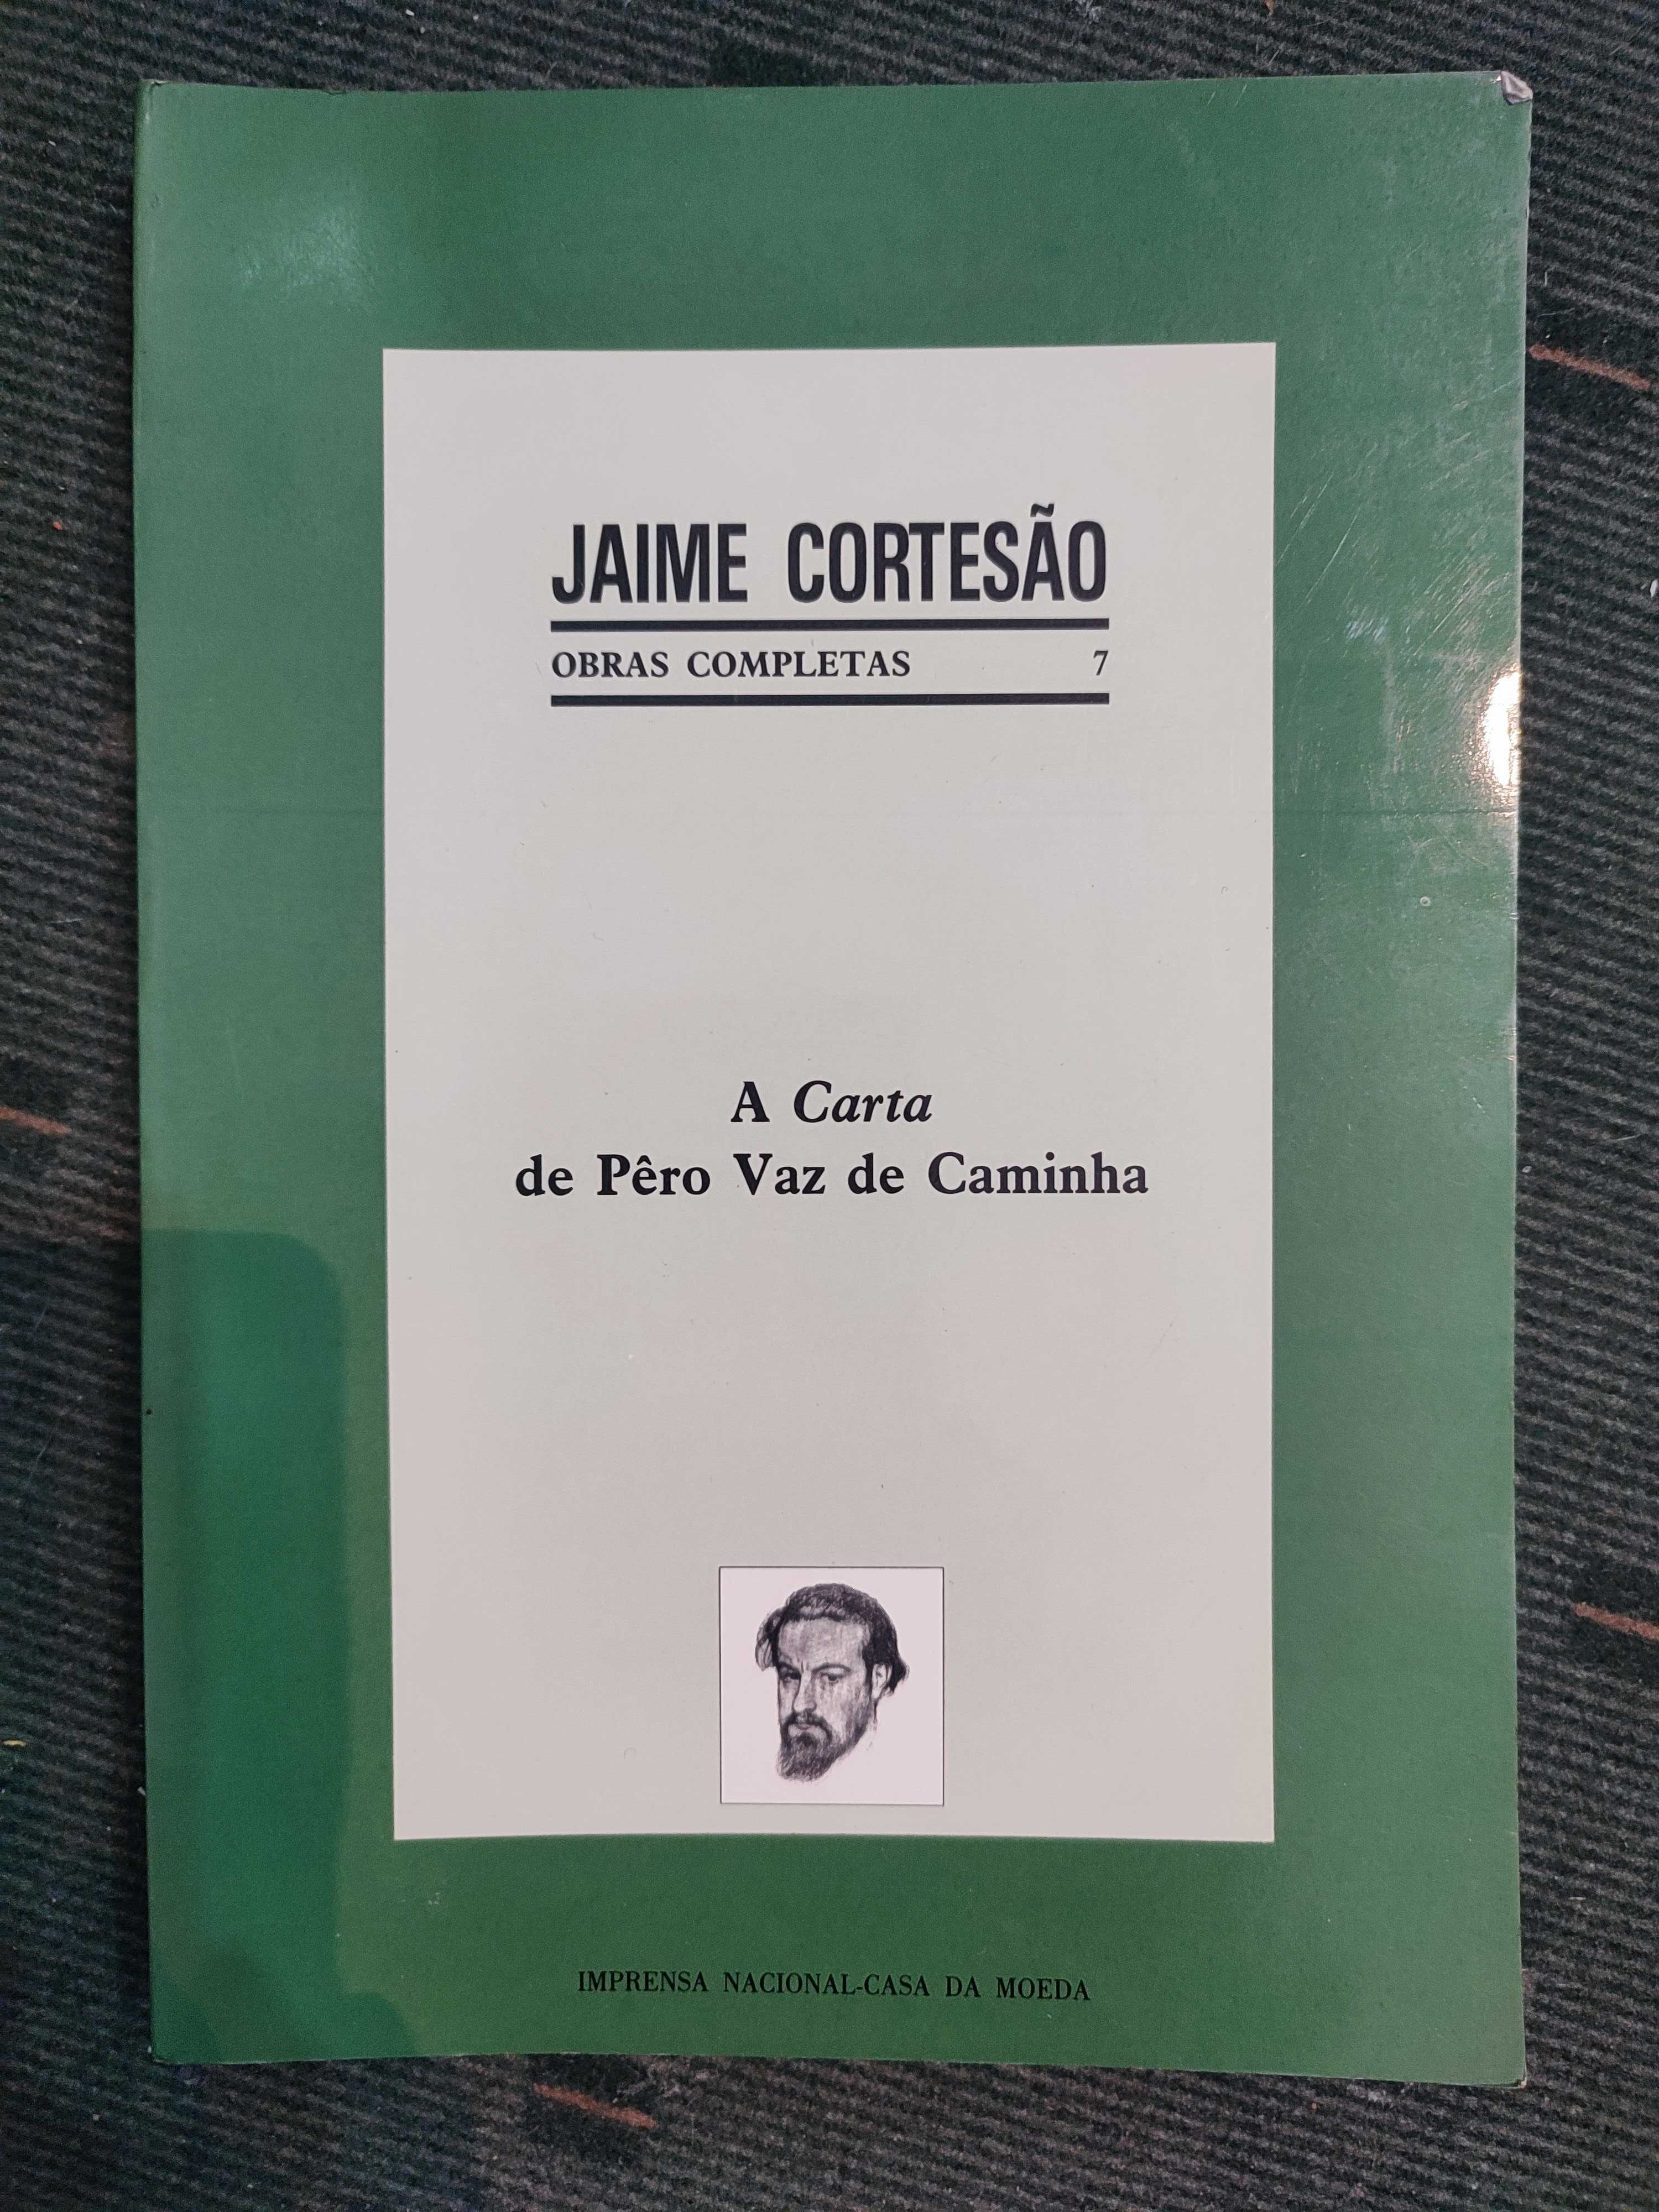 Jaime Cortesão - A Carta de Pêro Vaz de Caminha